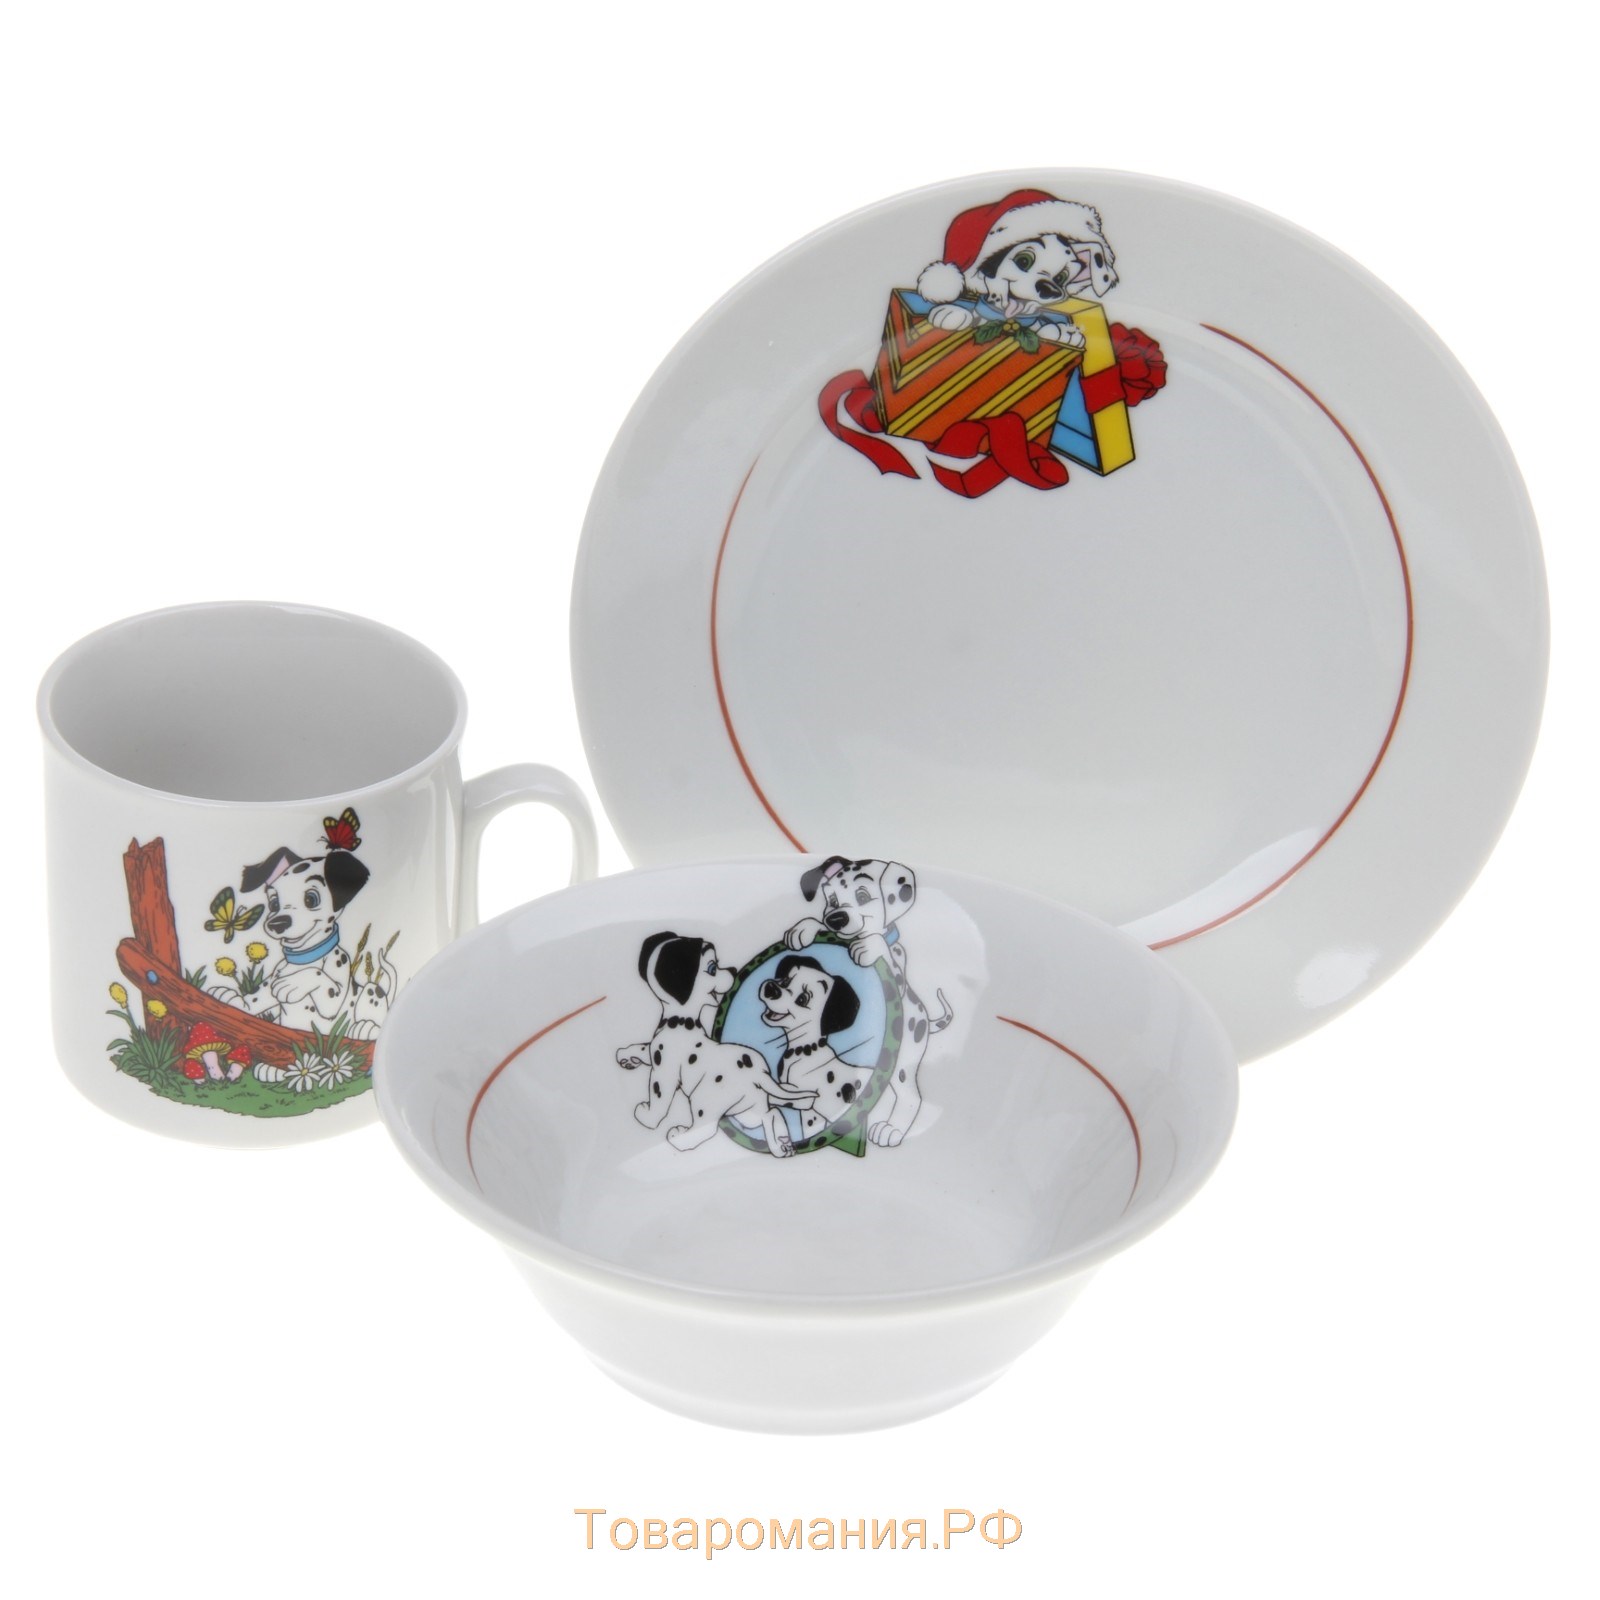 Набор посуды «Идиллия. Далматинцы», 3 предмета: кружка 200 мл, салатник 360 мл, тарелка мелкая d=17 см, цвет МИКС